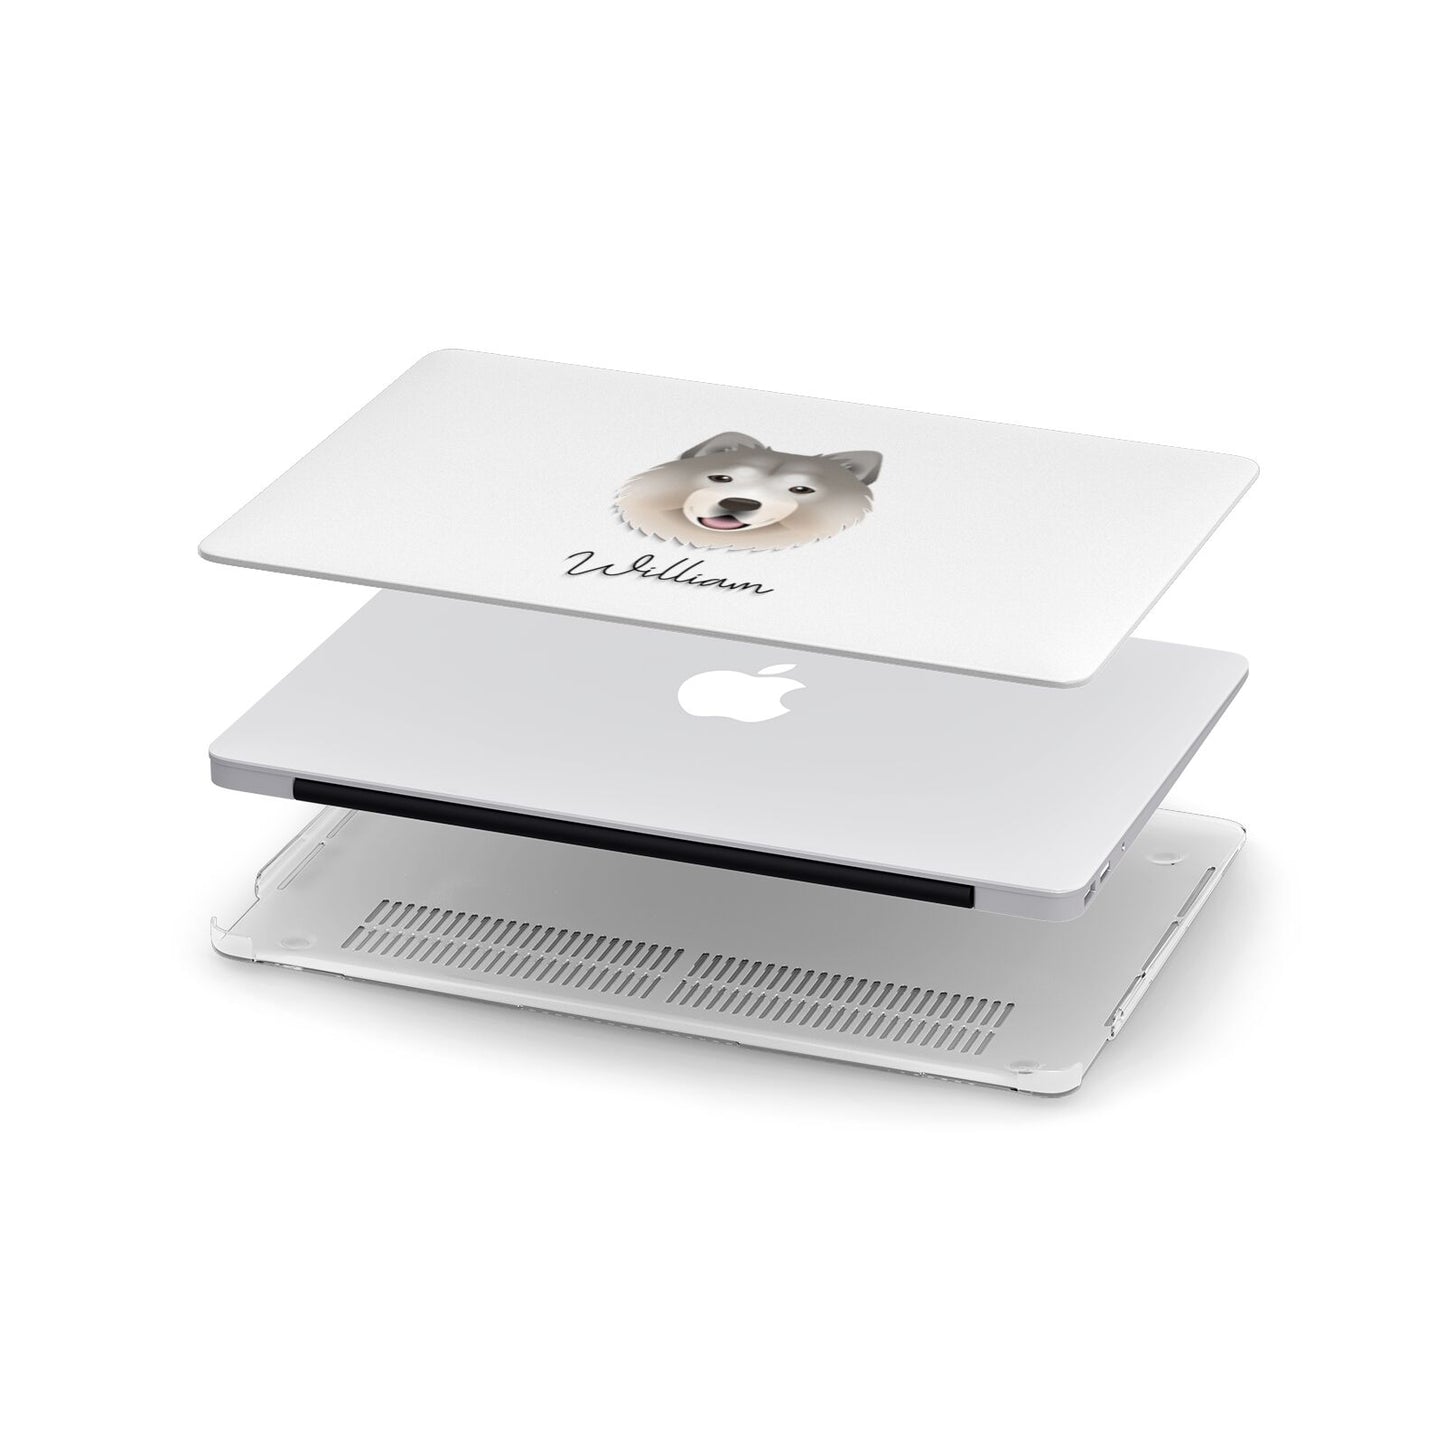 Chusky Personalised Apple MacBook Case in Detail